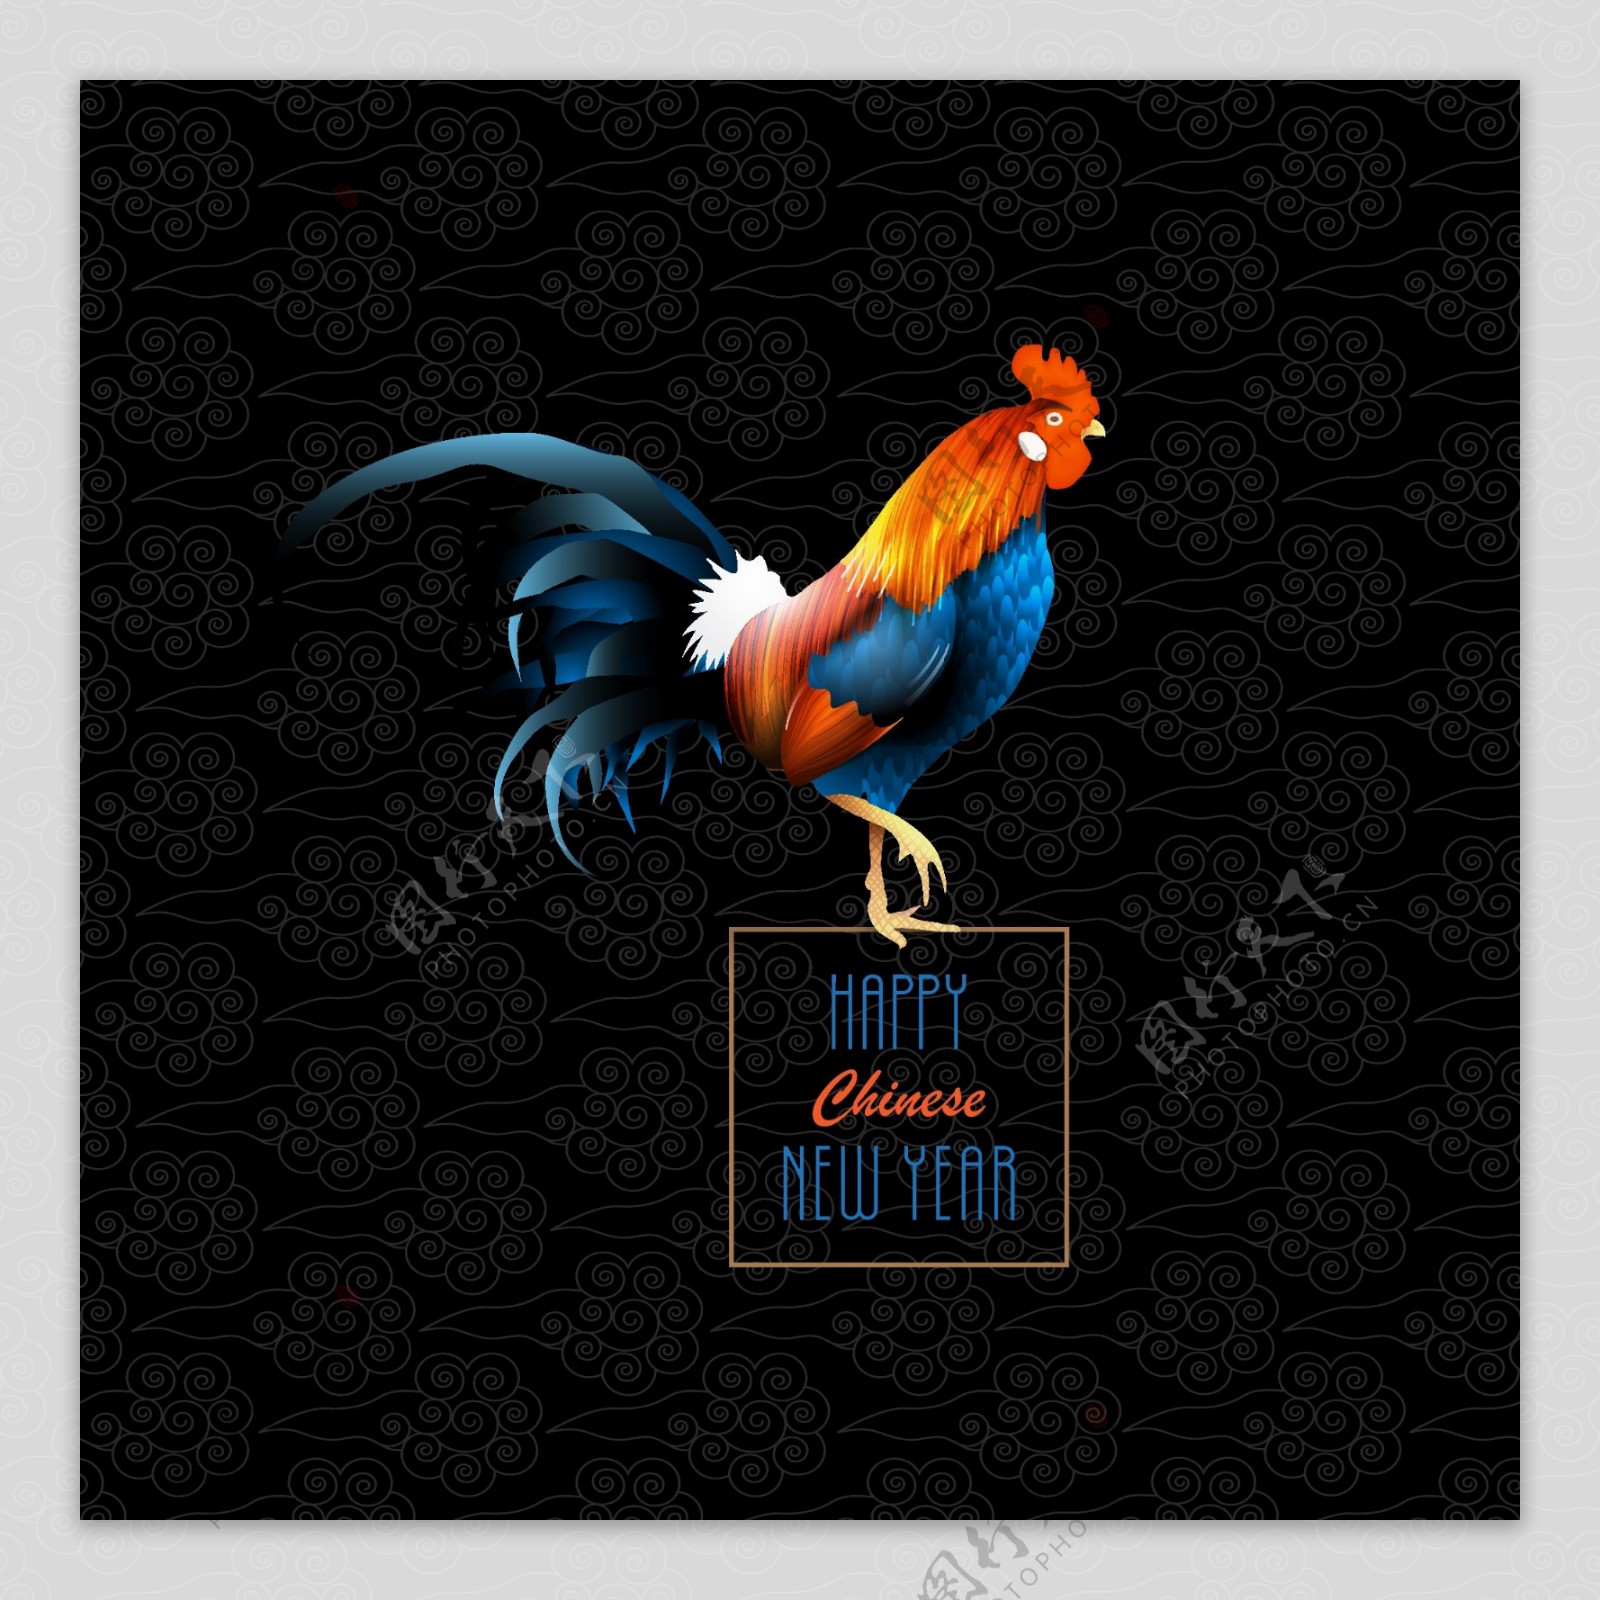 黑底鸡年新年快乐主题海报EPS矢量素材